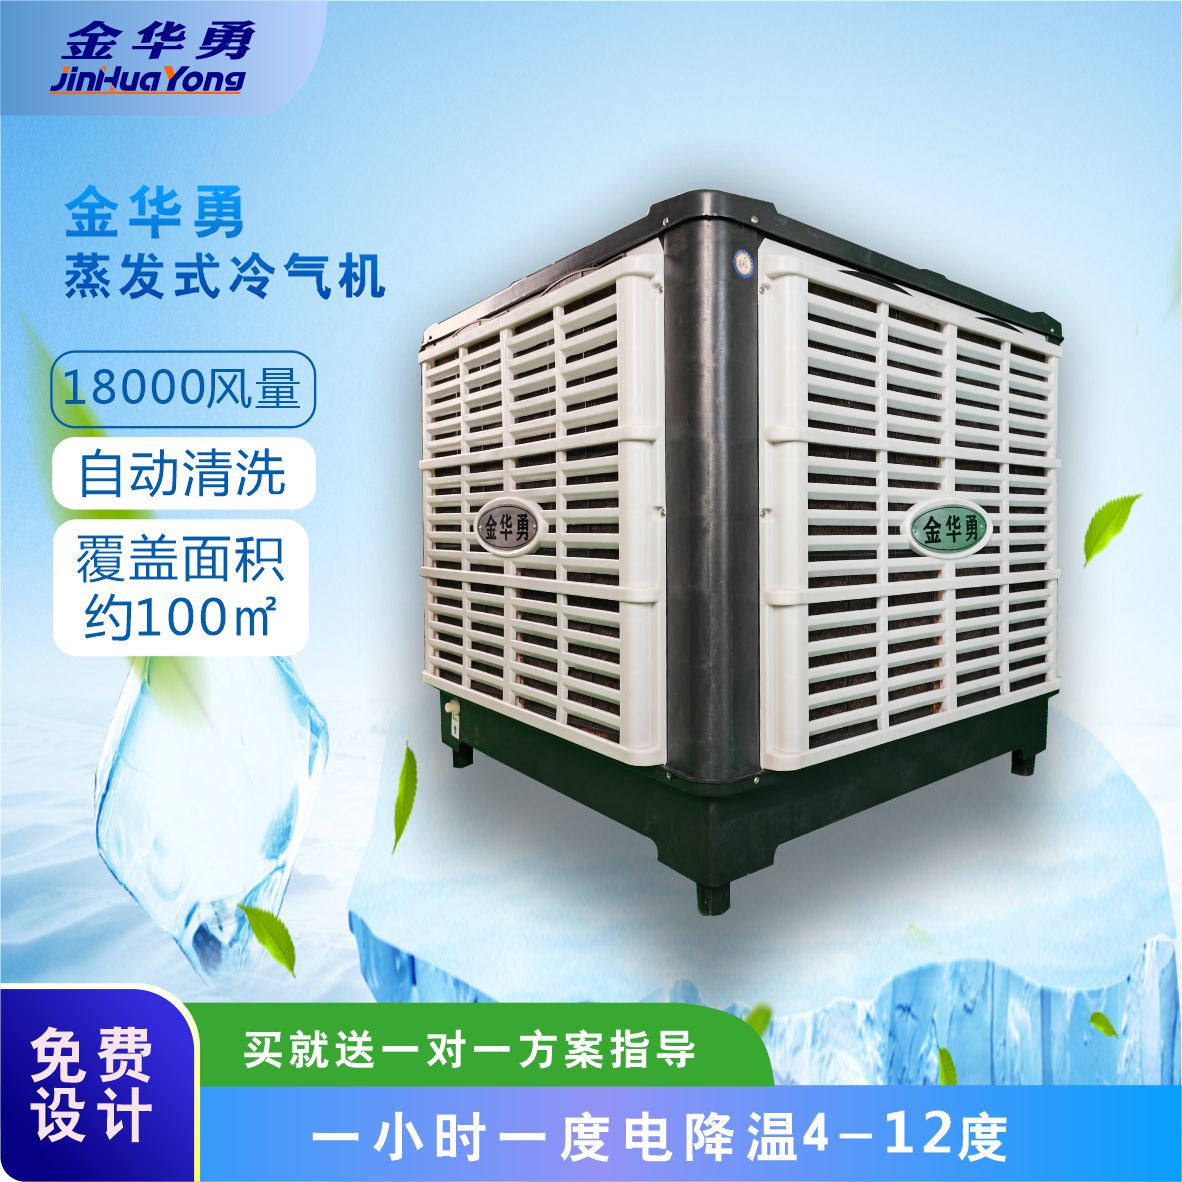 水冷空调- 公共场所、工厂节能降温产品